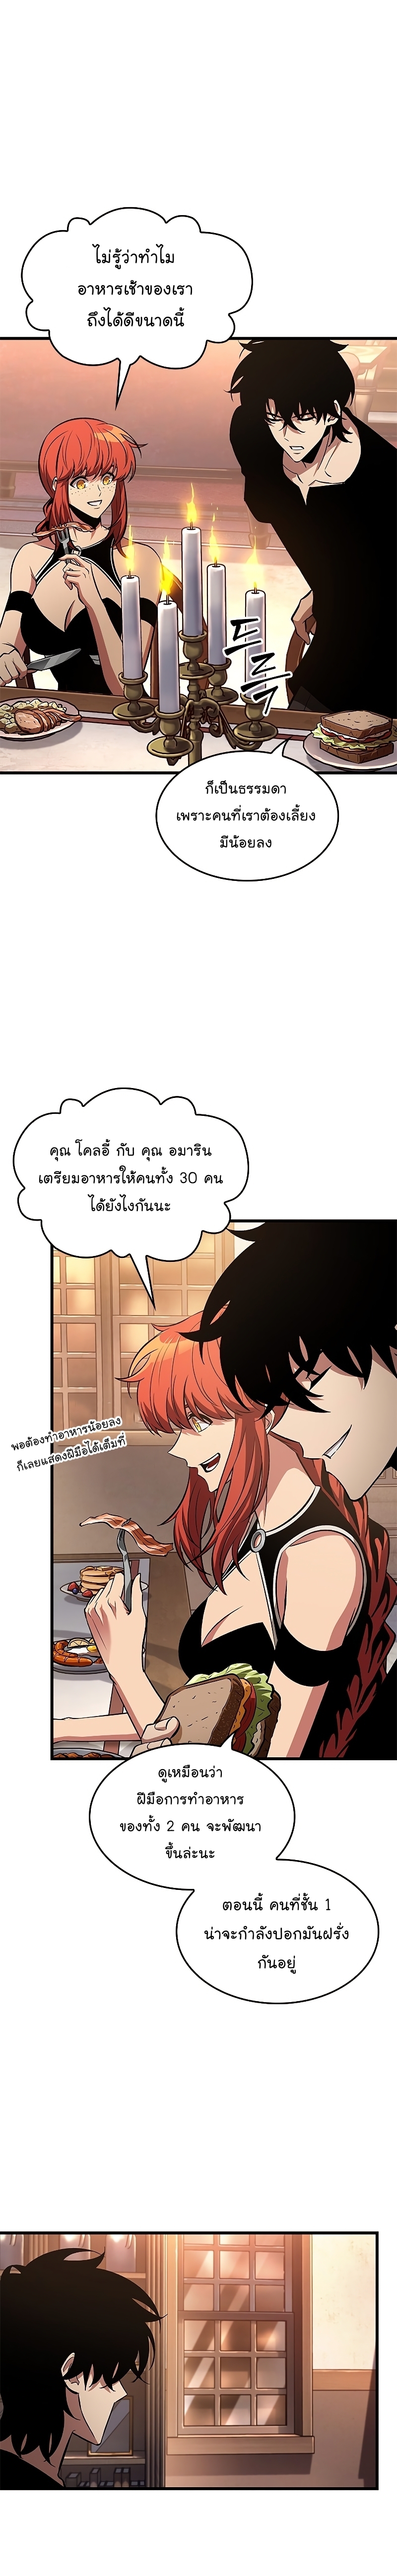 Manga I Manwha Pick Me 58 (22)